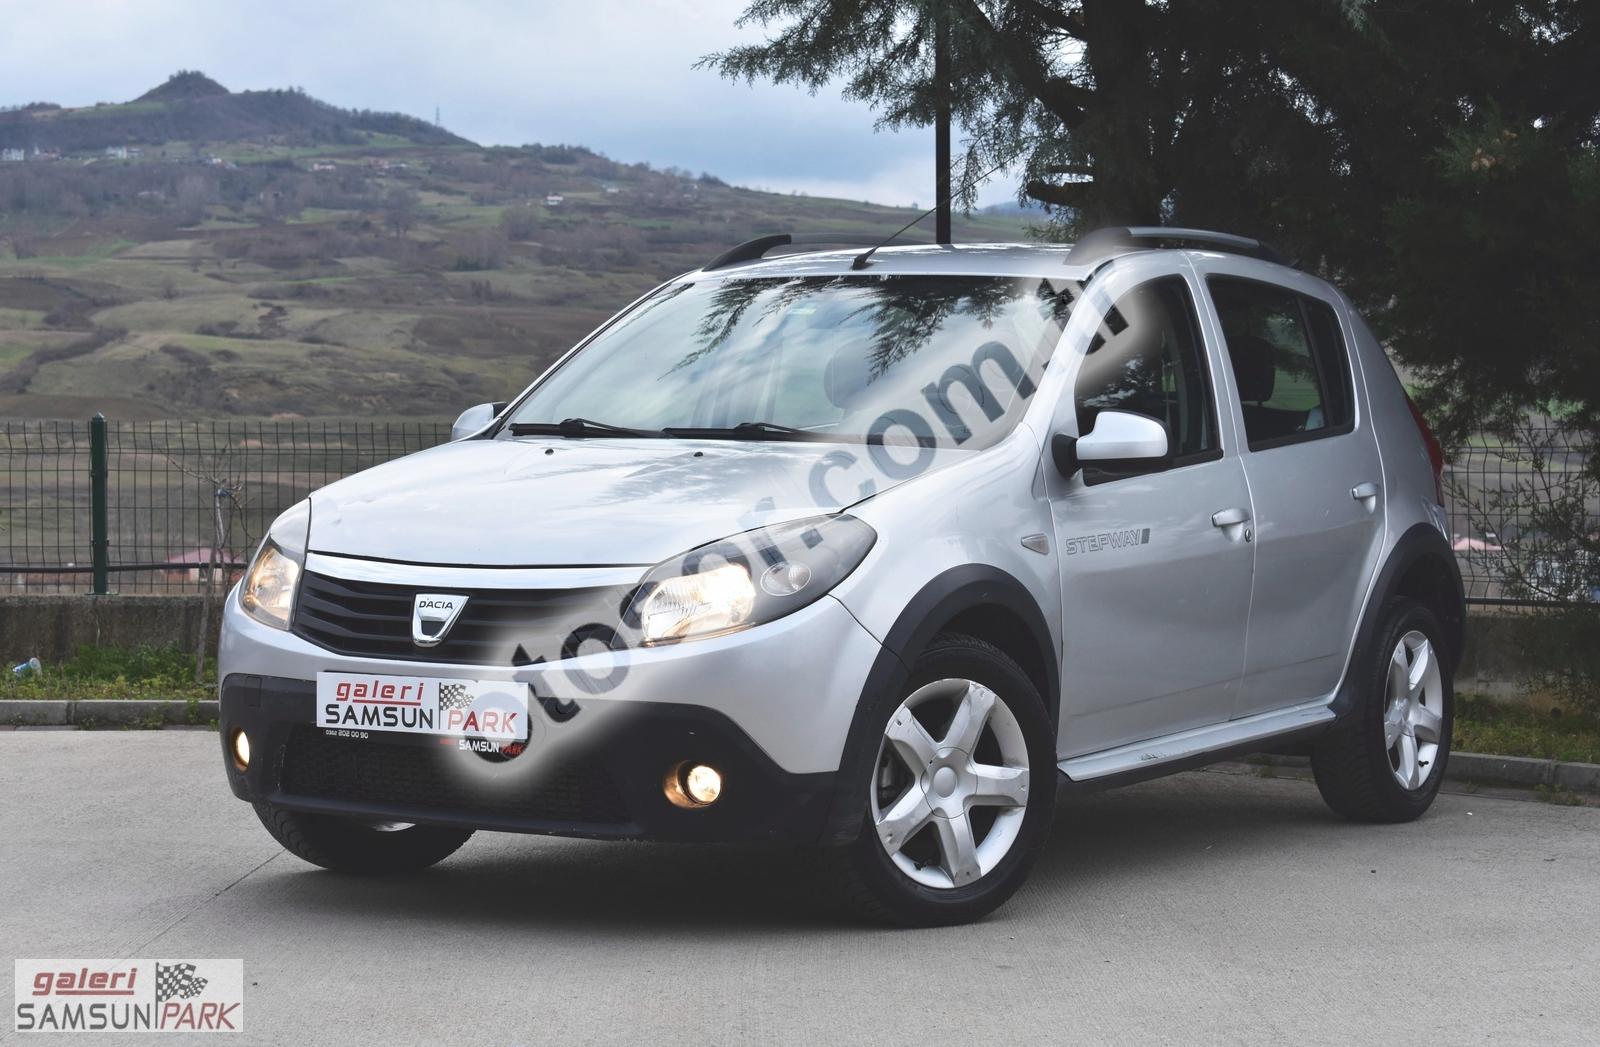 Taksitle Satılık 2. El Dacia 1.5 Dci Stepway 90HP 263.000 Km 2012 Model  Fiyatları ve Modelleri | OtoSOR